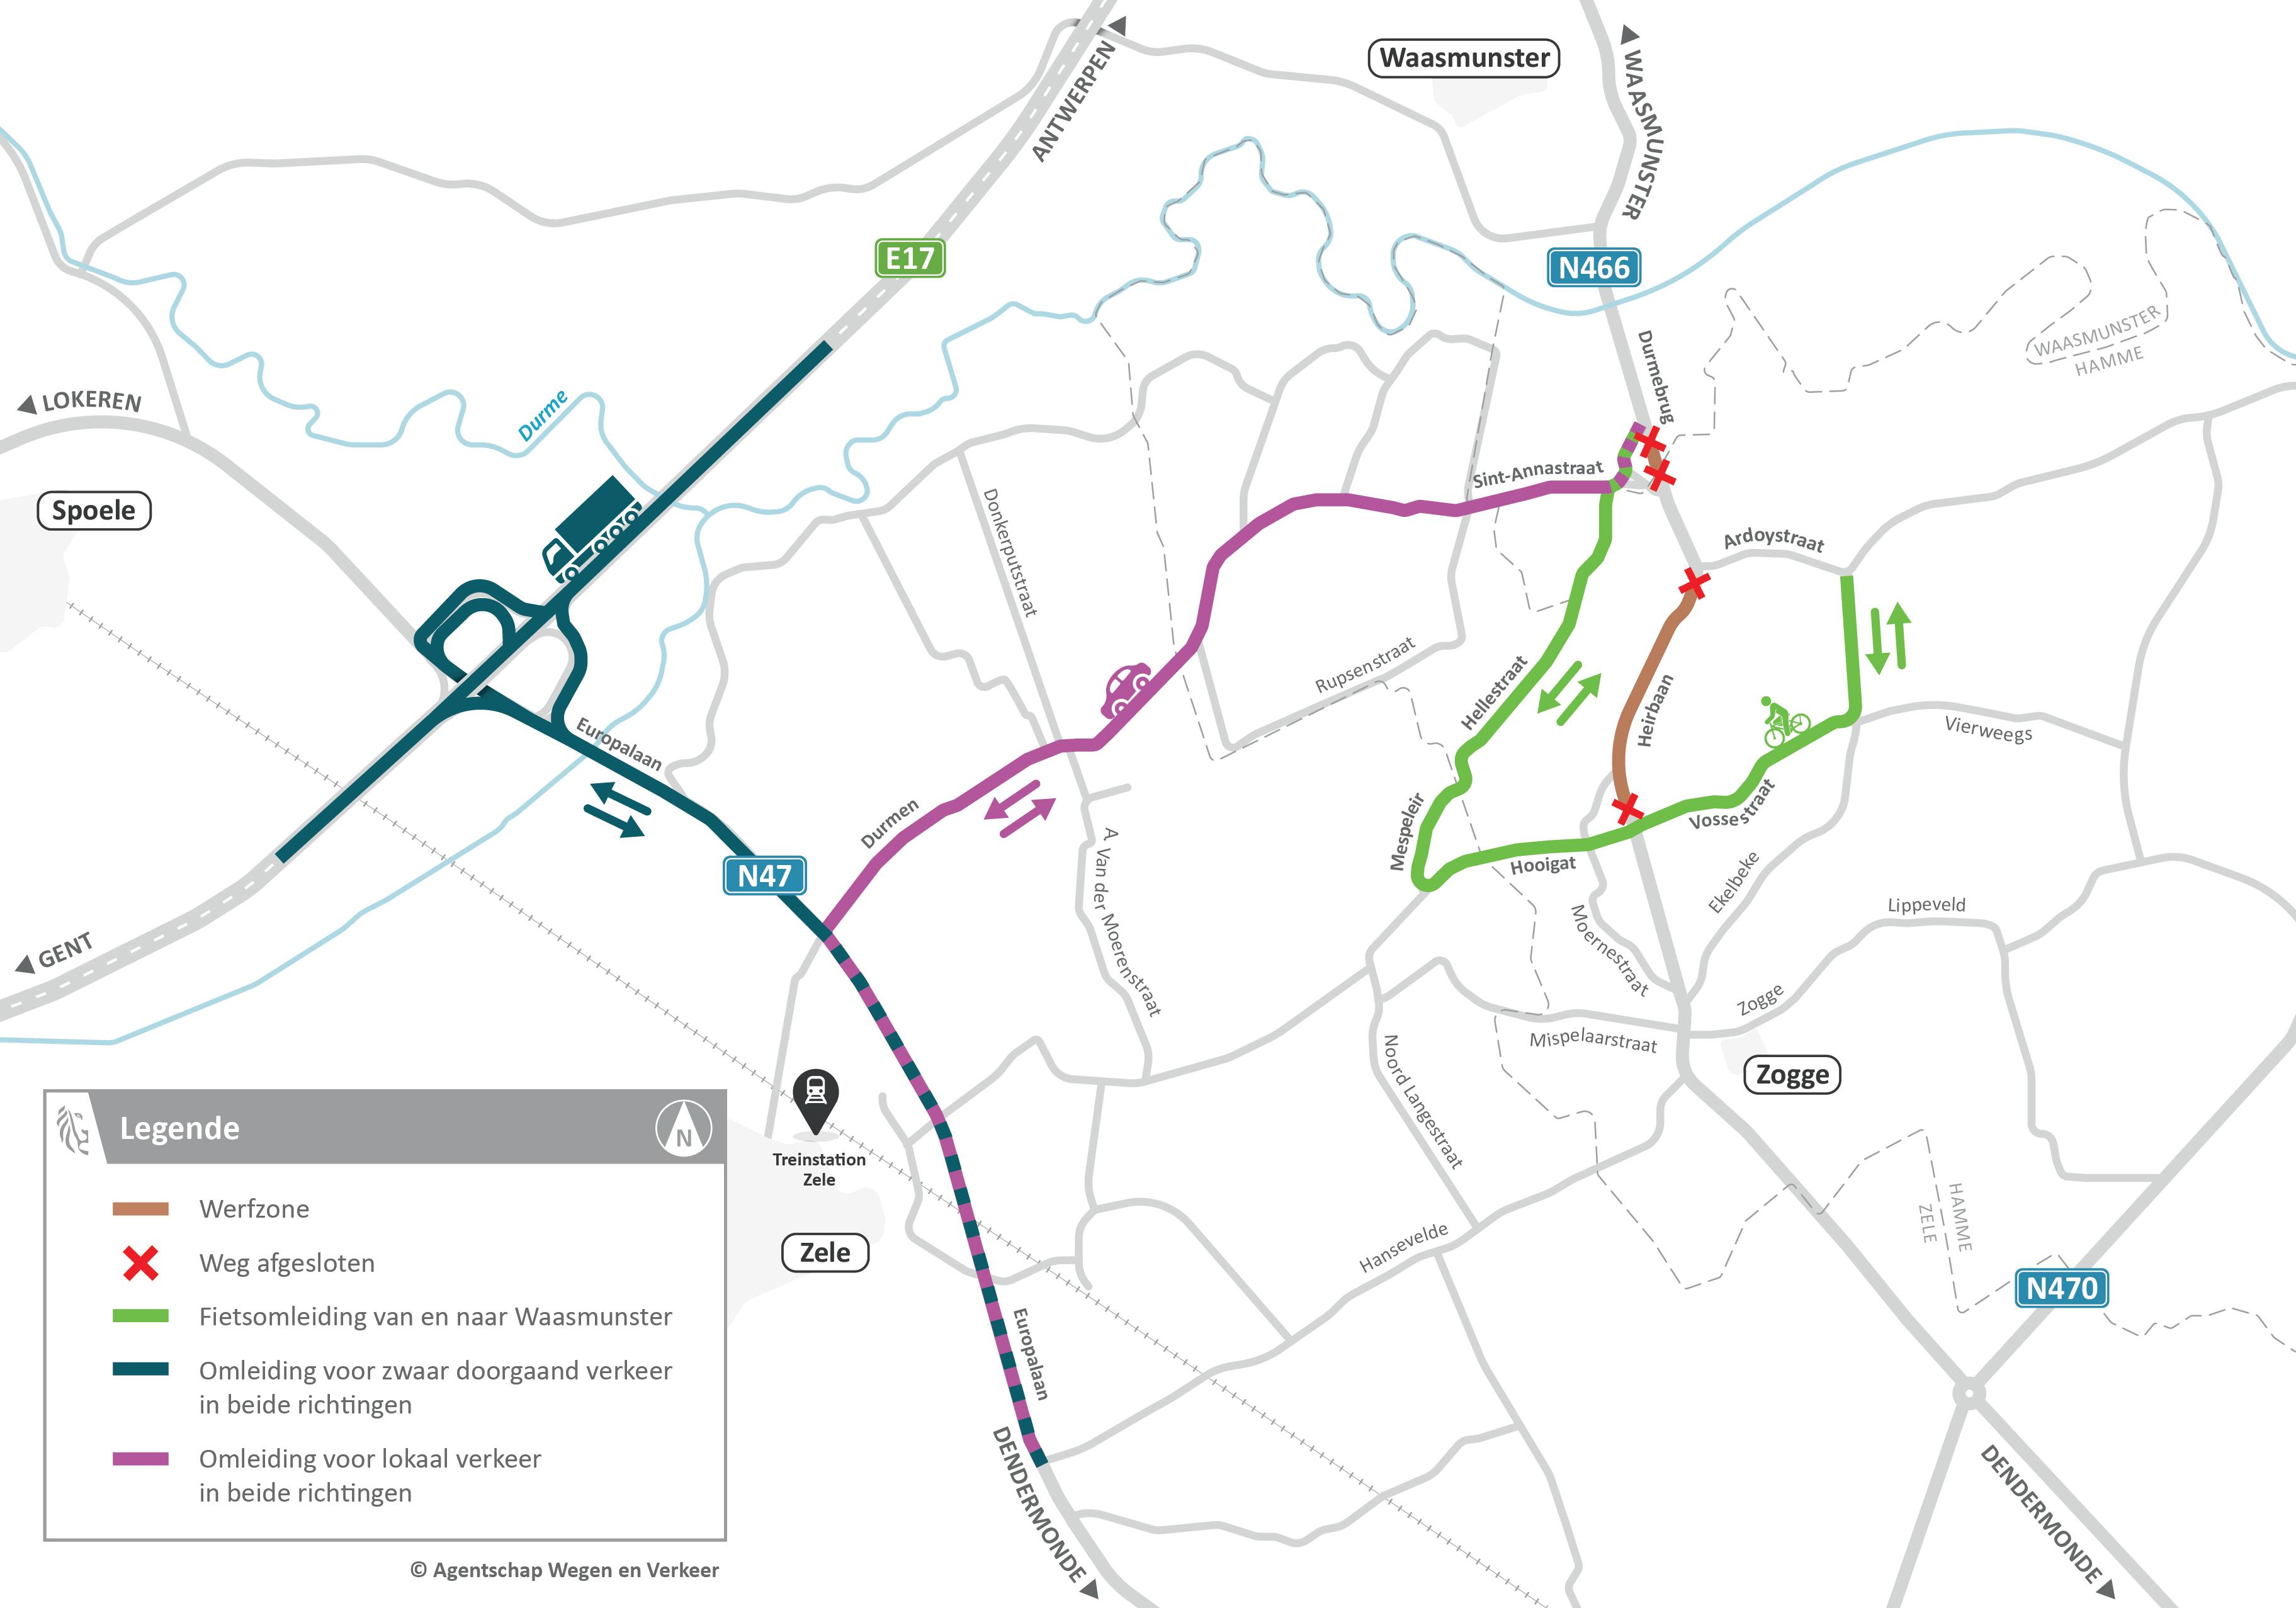 Omleidingskaart N446 Waasmunster - verkeerssituatie vanaf oktober 2023